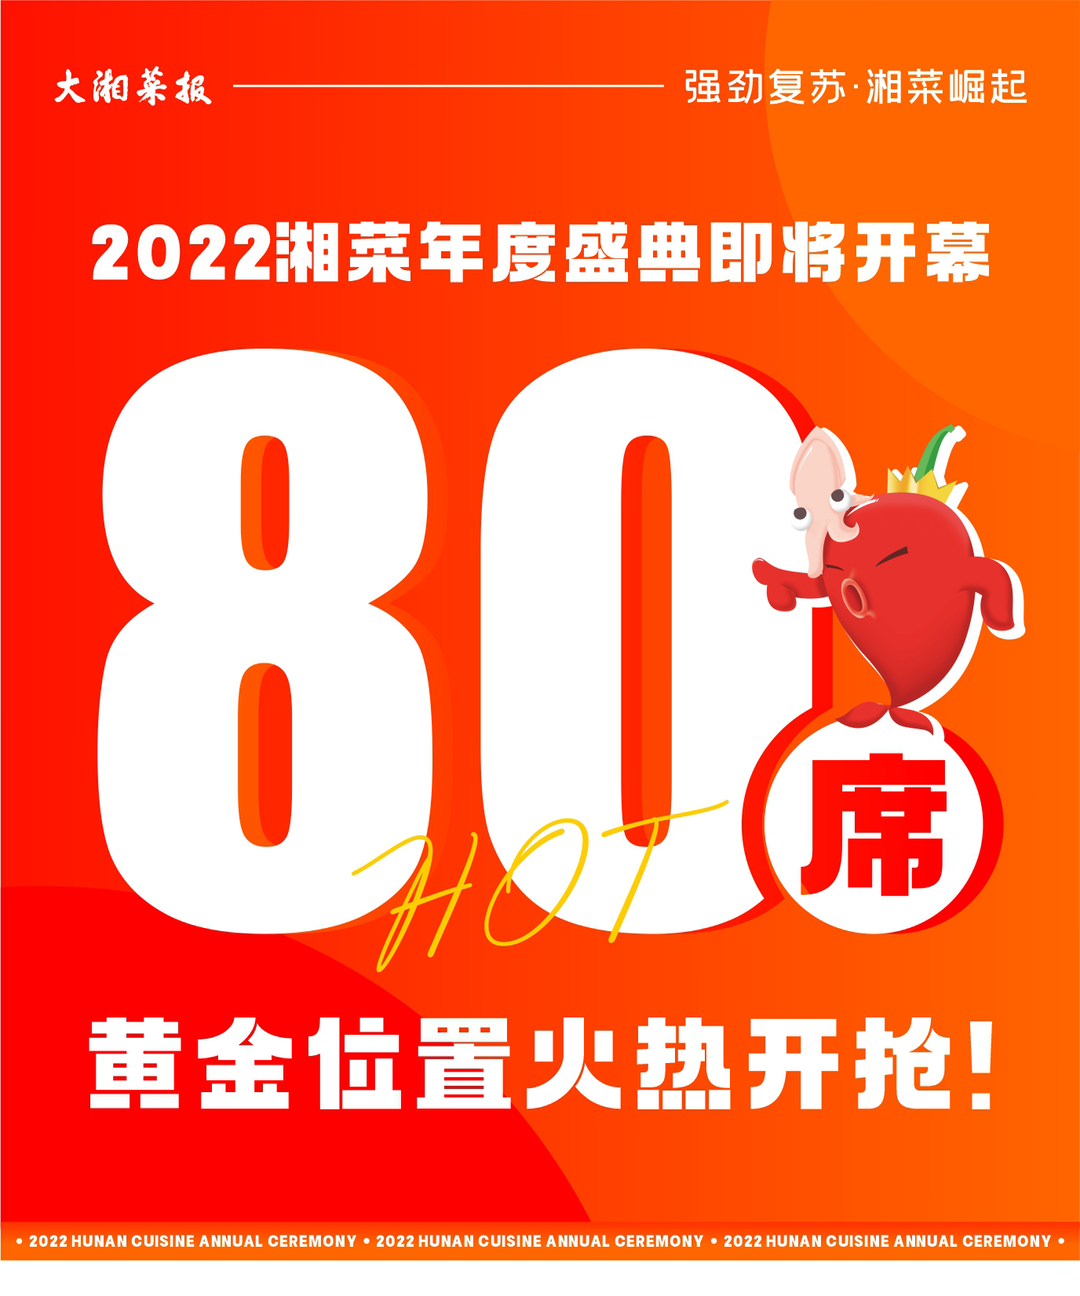 2022湘菜年度盛典即将开幕，80席黄金展位火热开抢！